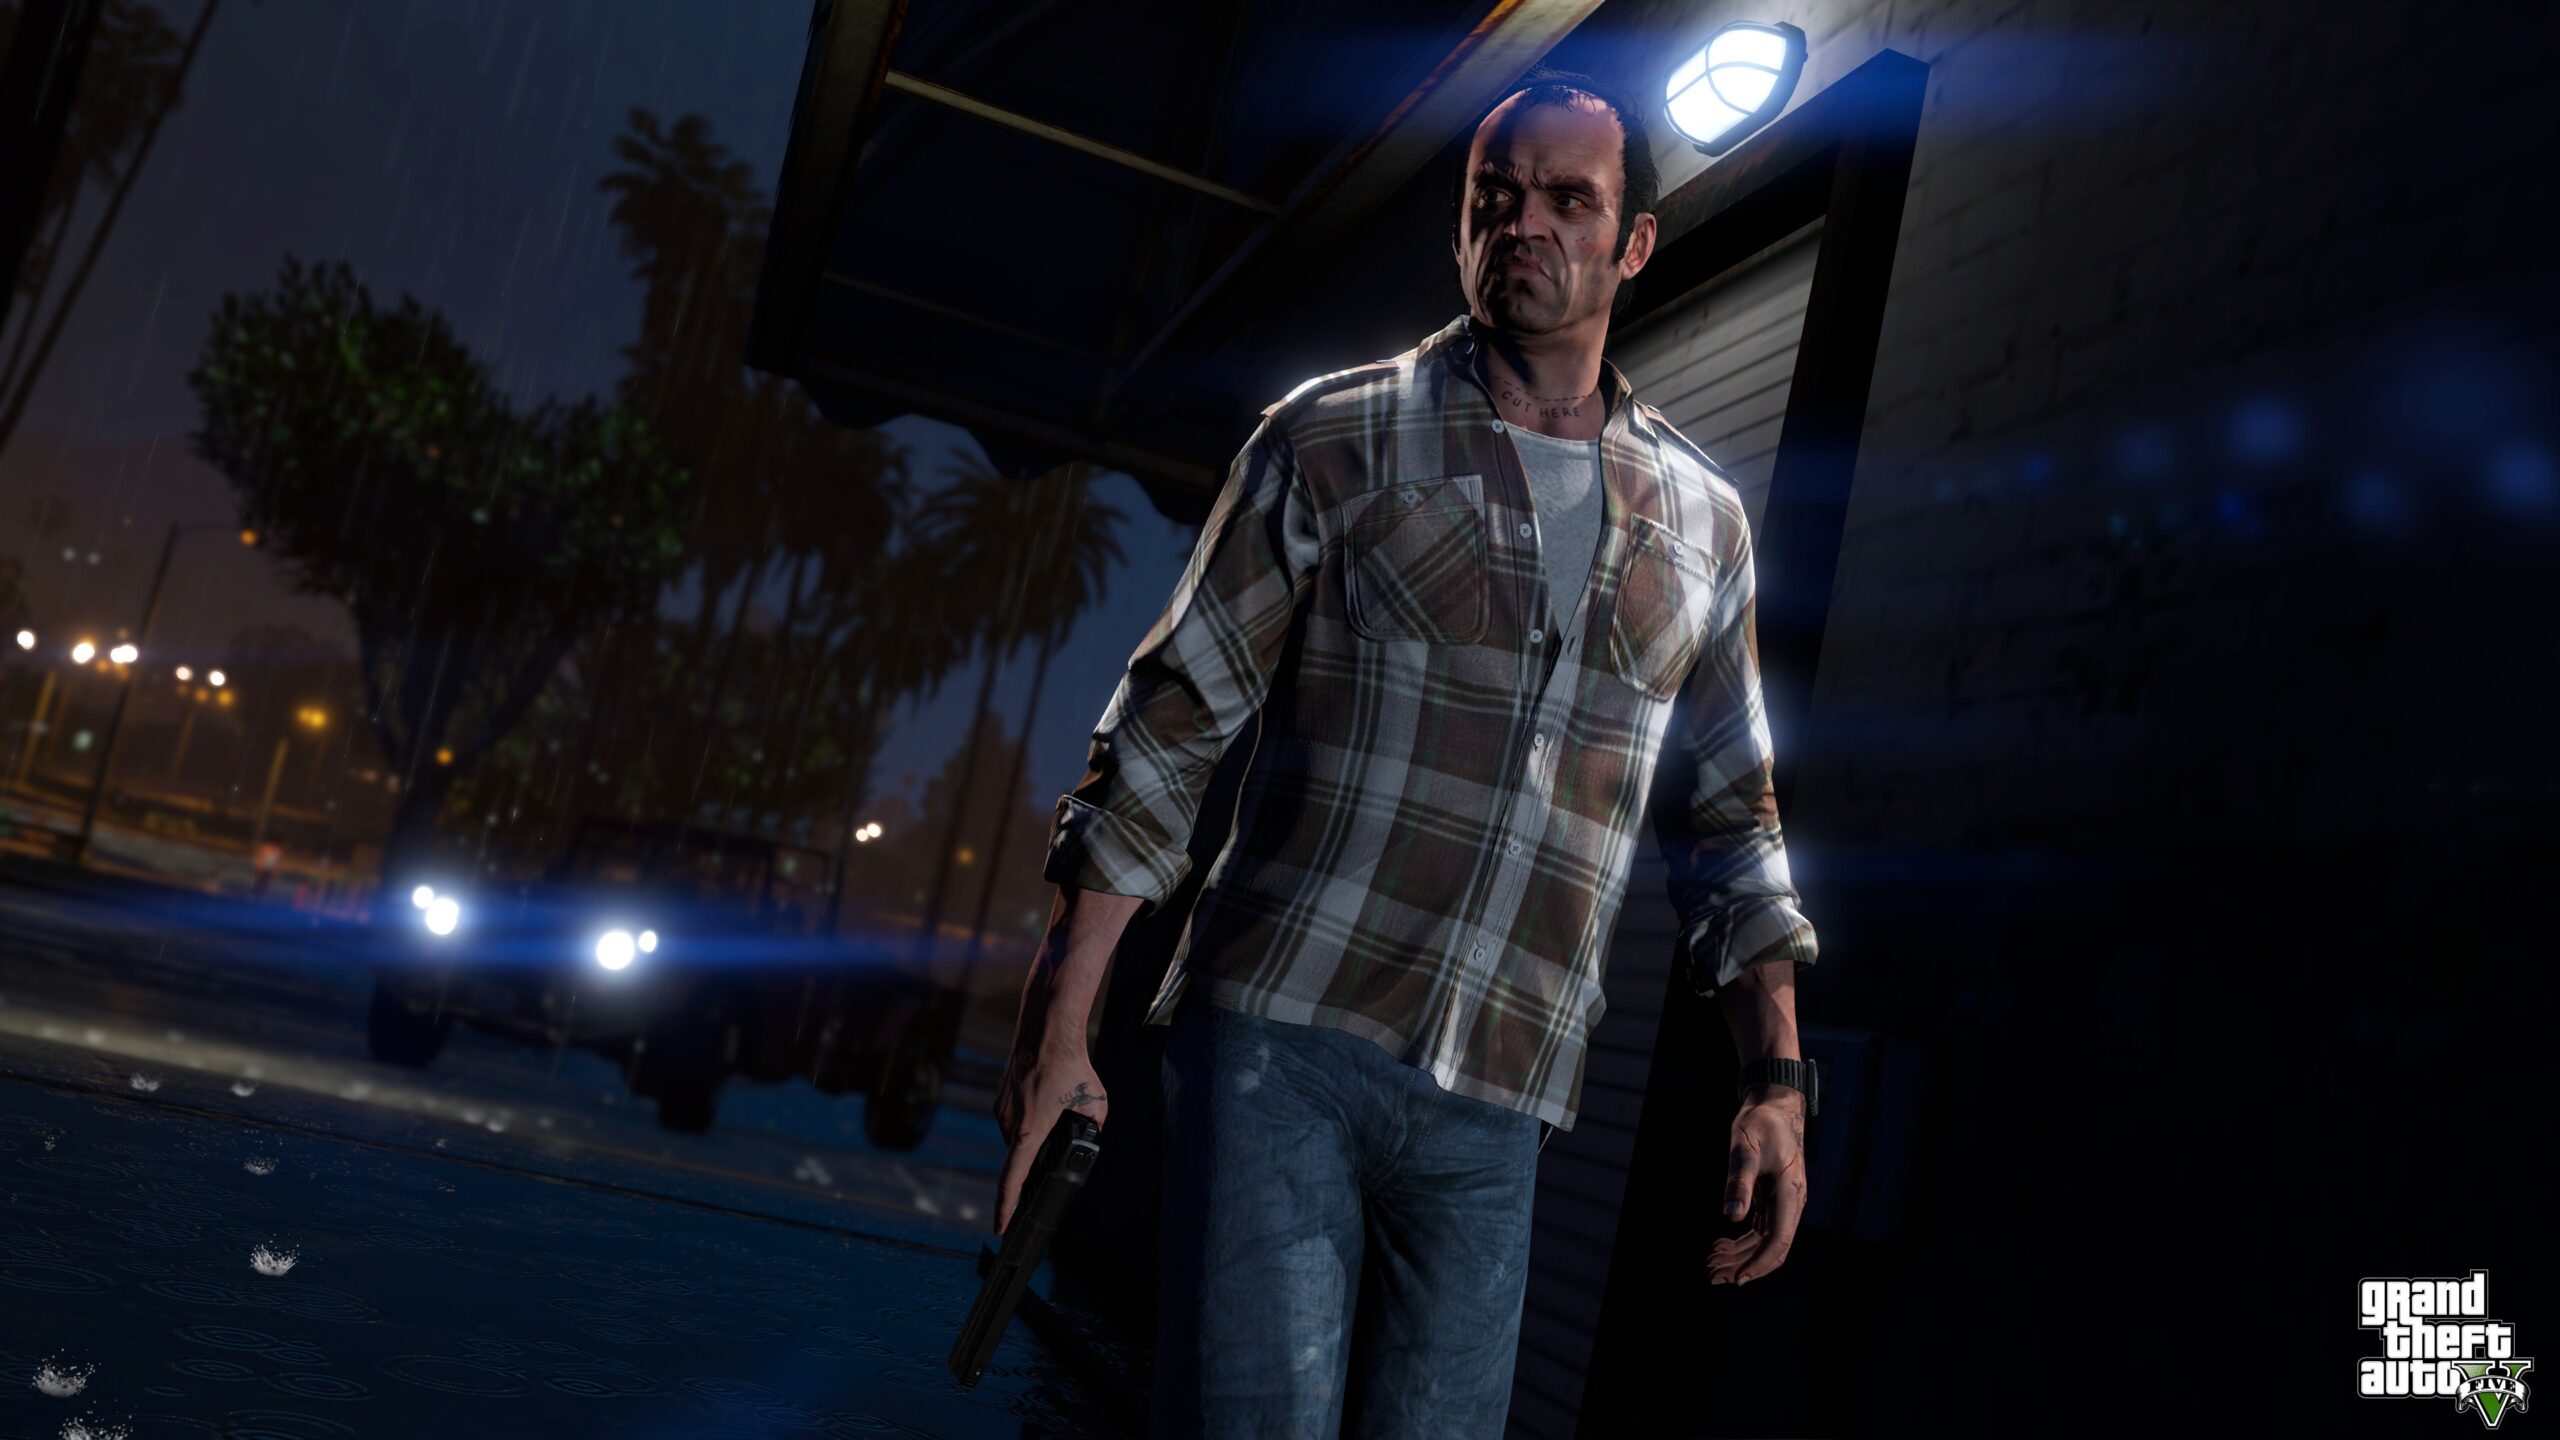 Fan de Grand Theft Auto invade programa de televisión en vivo preguntando dónde diablos está GTA 6